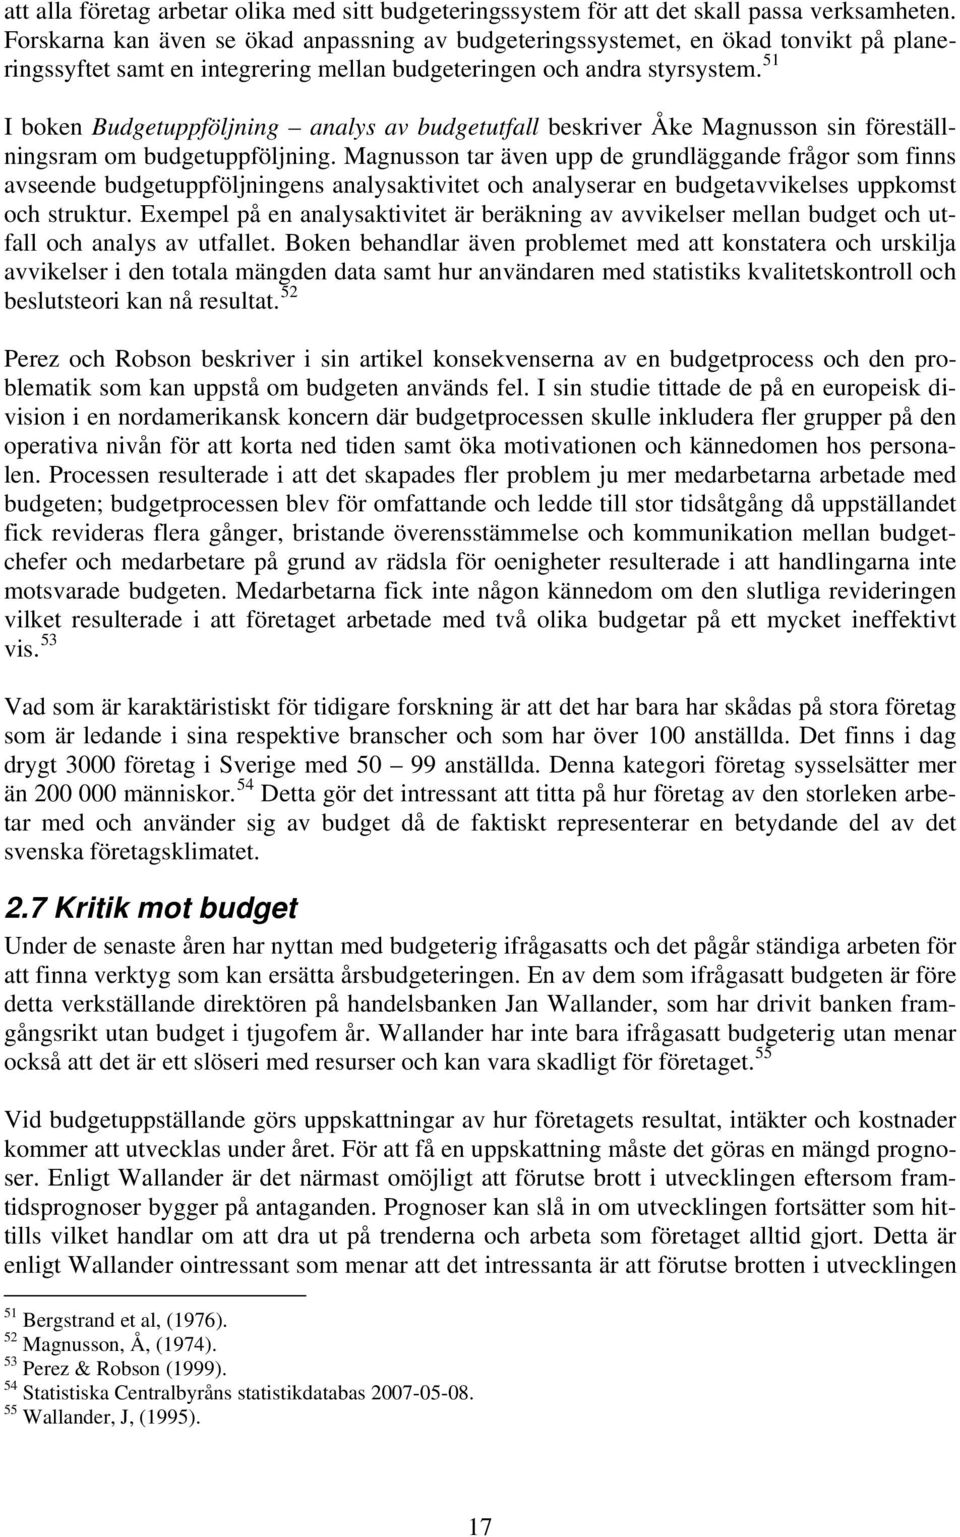 51 I boken Budgetuppföljning analys av budgetutfall beskriver Åke Magnusson sin föreställningsram om budgetuppföljning.